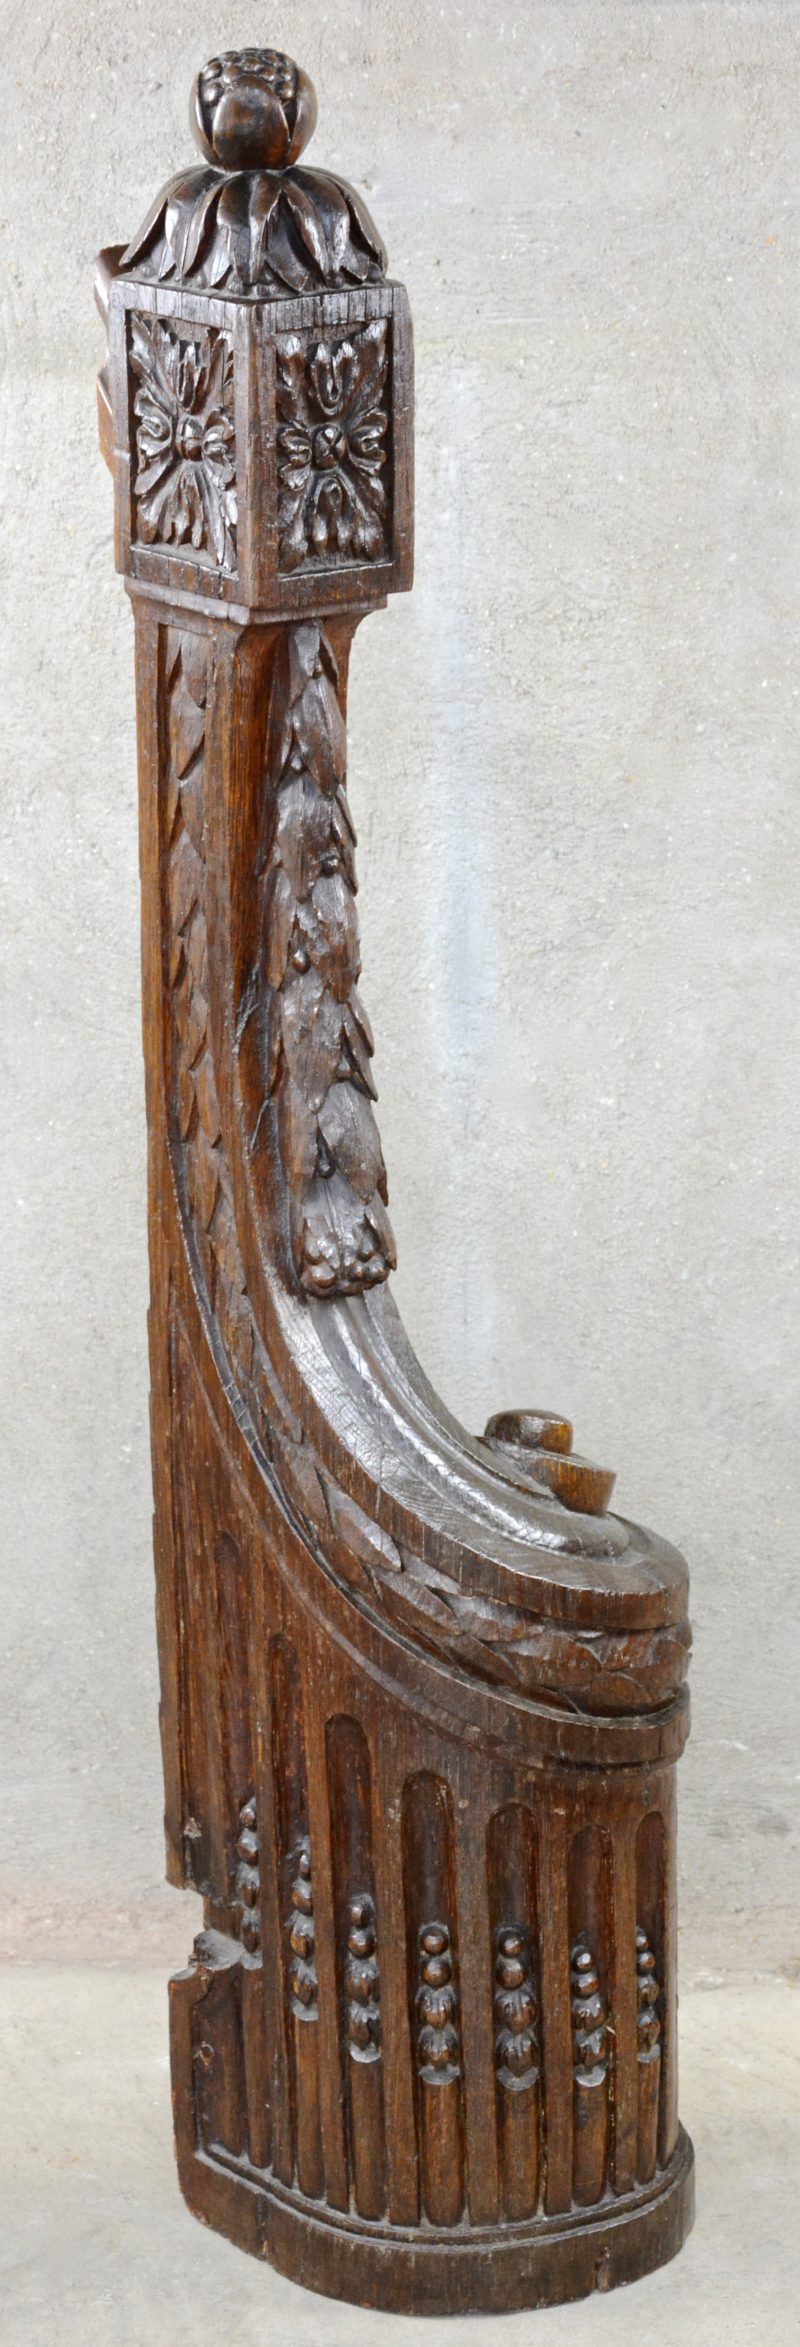 Een uiteinde van een trapleuning van gebeeldhouwd eikenhout in Lodewijk XVI-stijl.